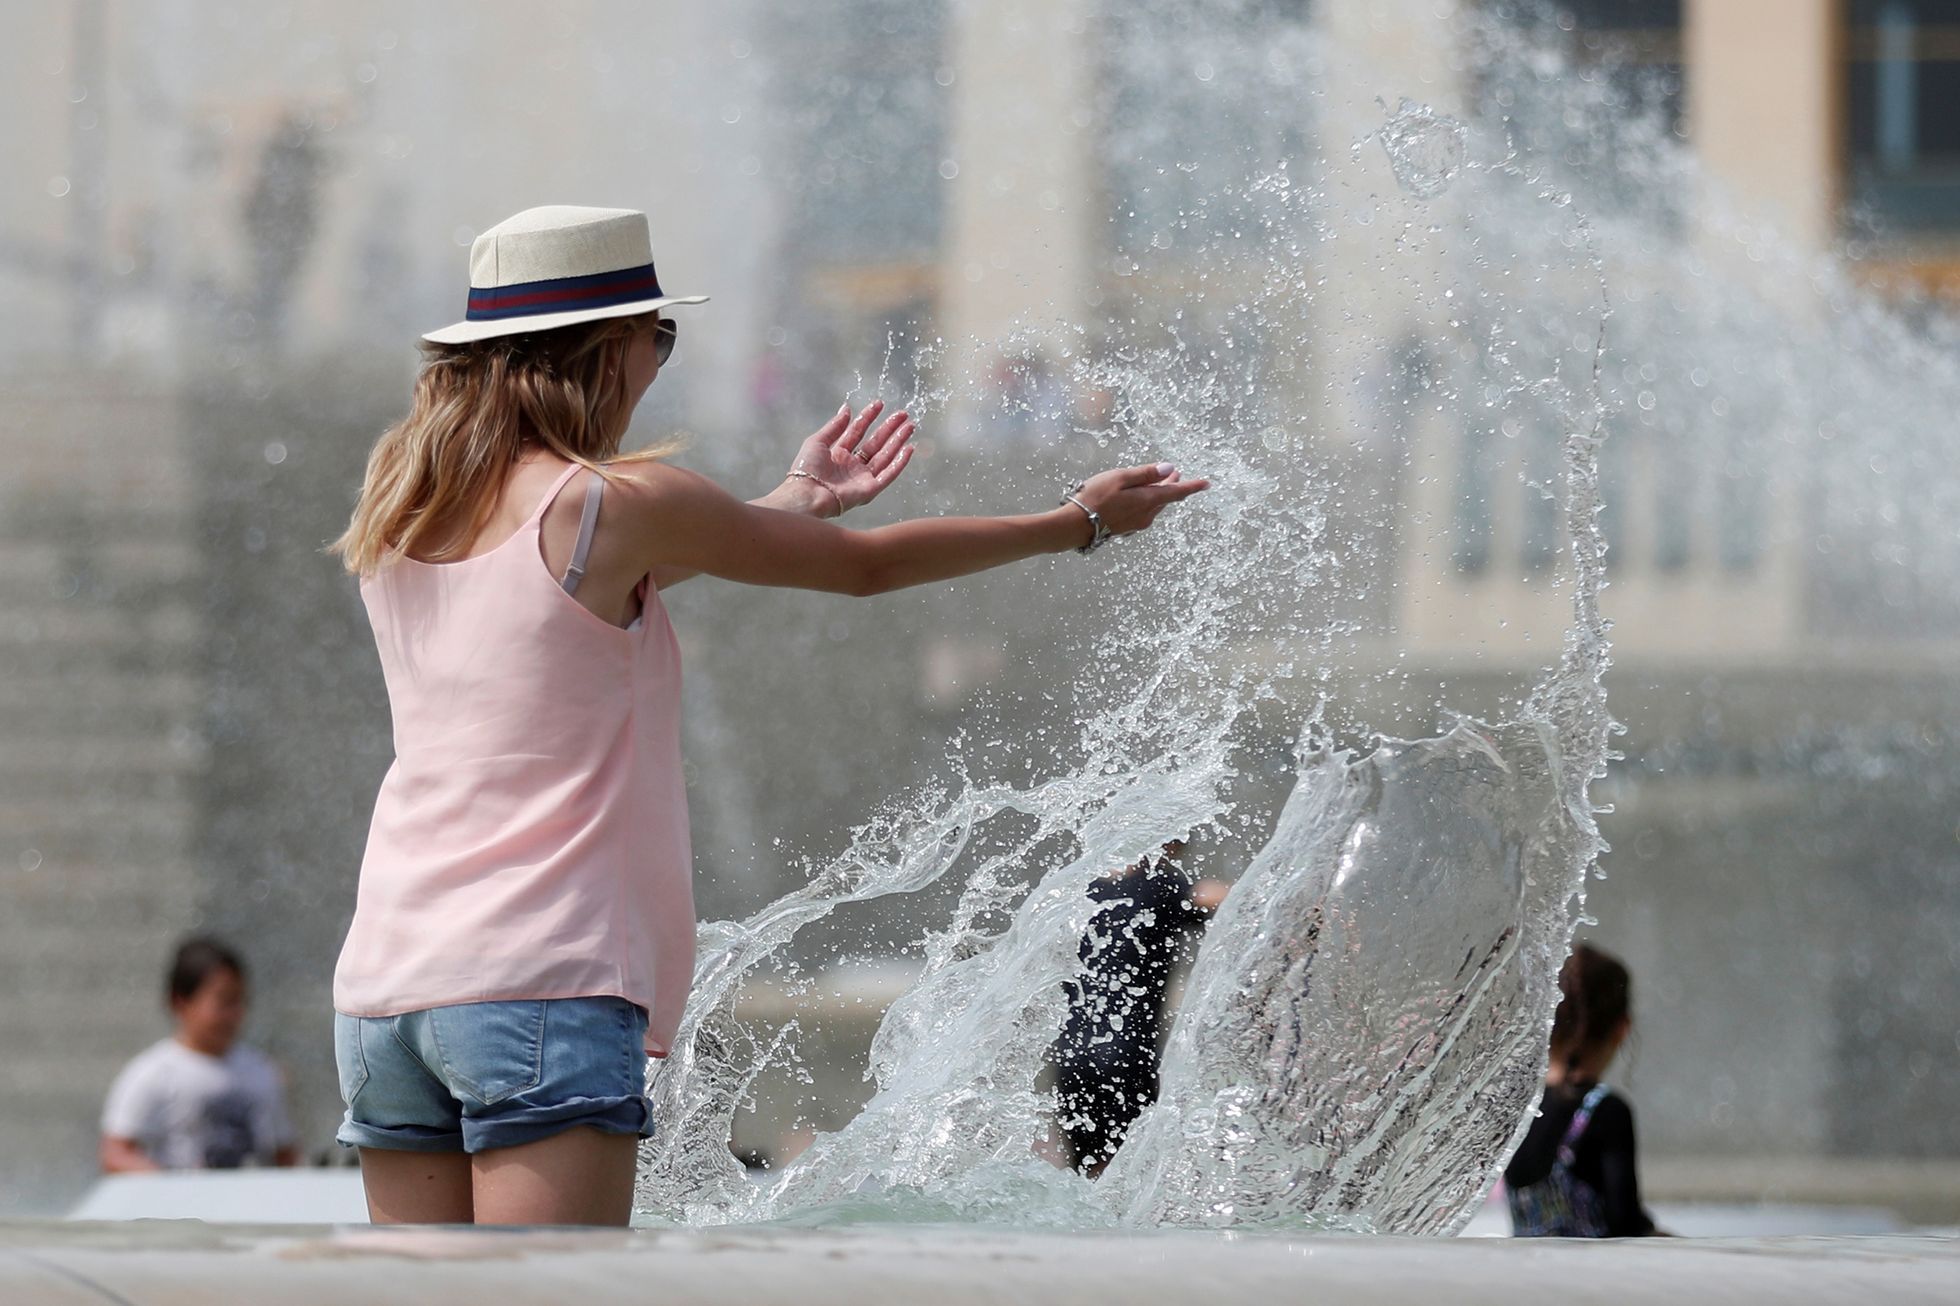 Fotogalerie / Letní vedra / Horko / Léto / Koupání / Voda / Počasí / Osvěžení / Reuters / 19